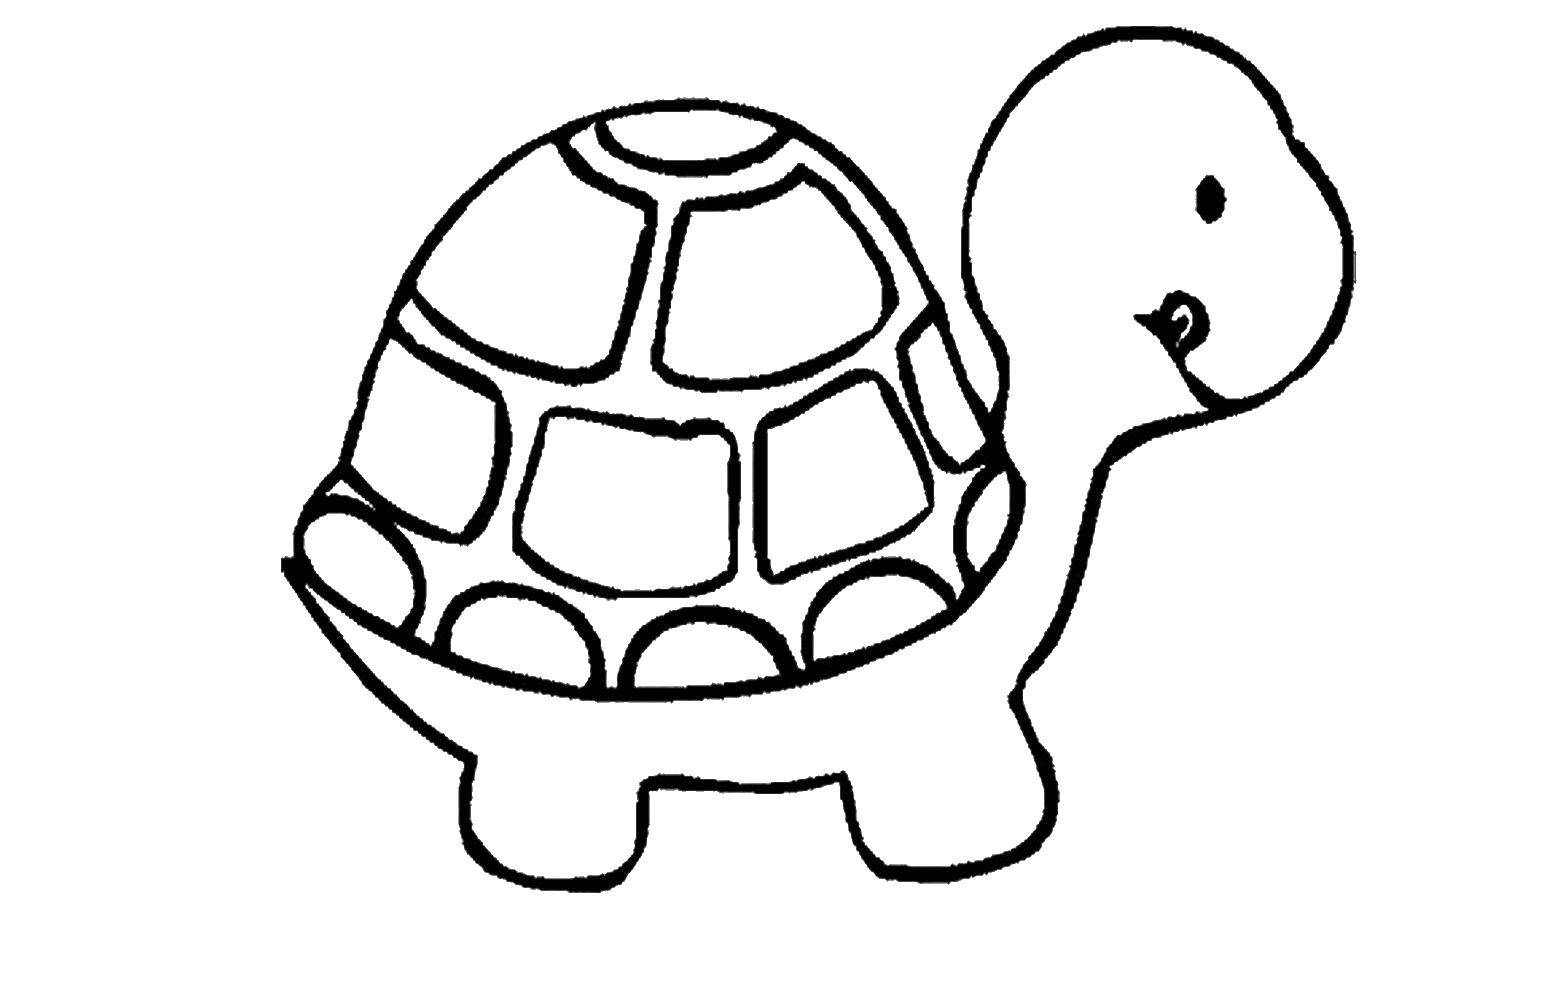 Раскраска с изображением черепахи и ее панциря (животные, черепаха, панцирь)